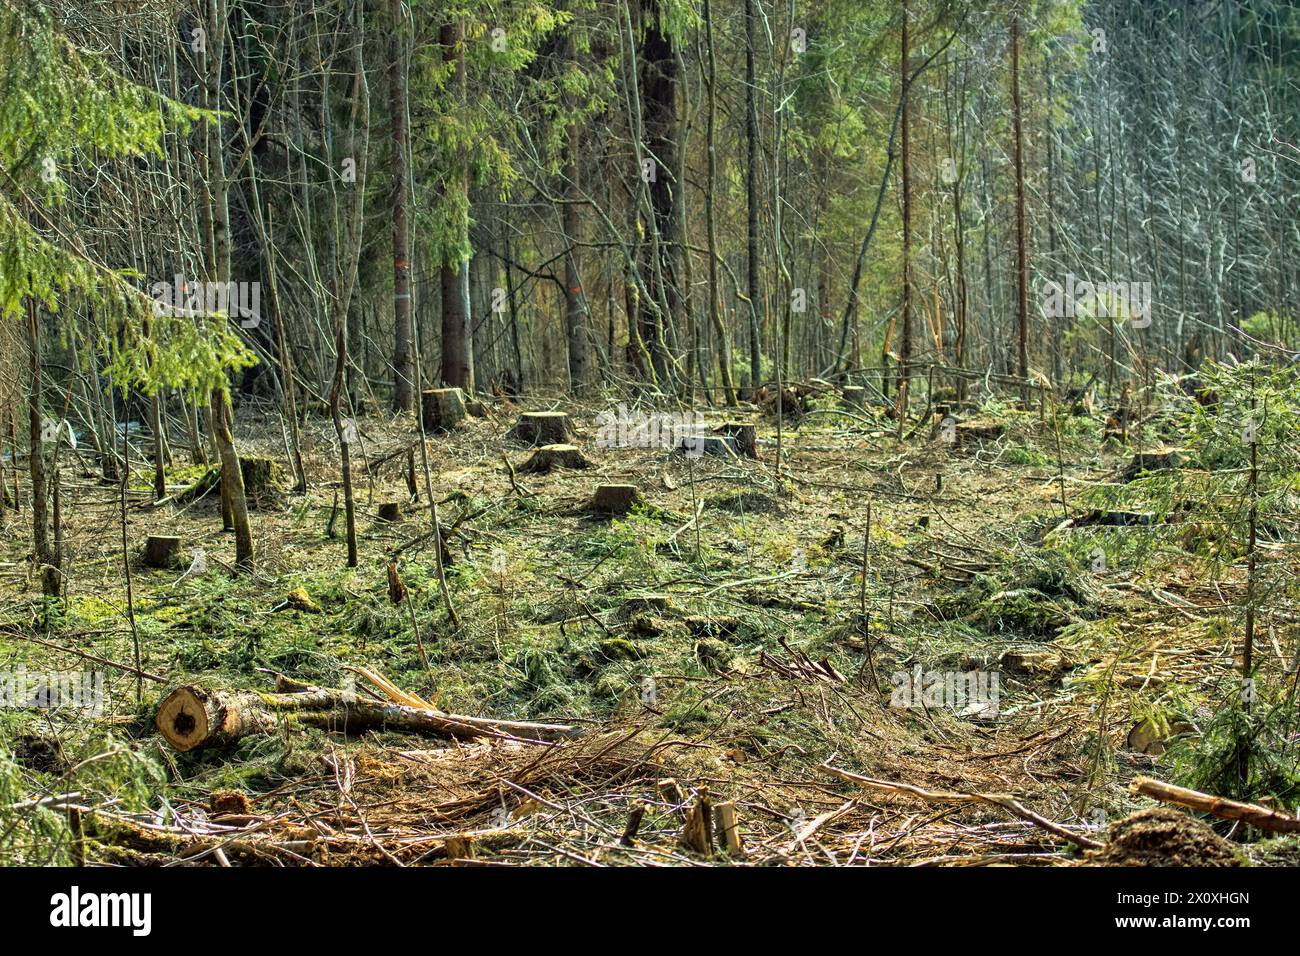 Souches des sapins dans la clairière hivernale, vue printanière. Forêts boréales (épinette européenne) du nord-est de l'Europe Banque D'Images